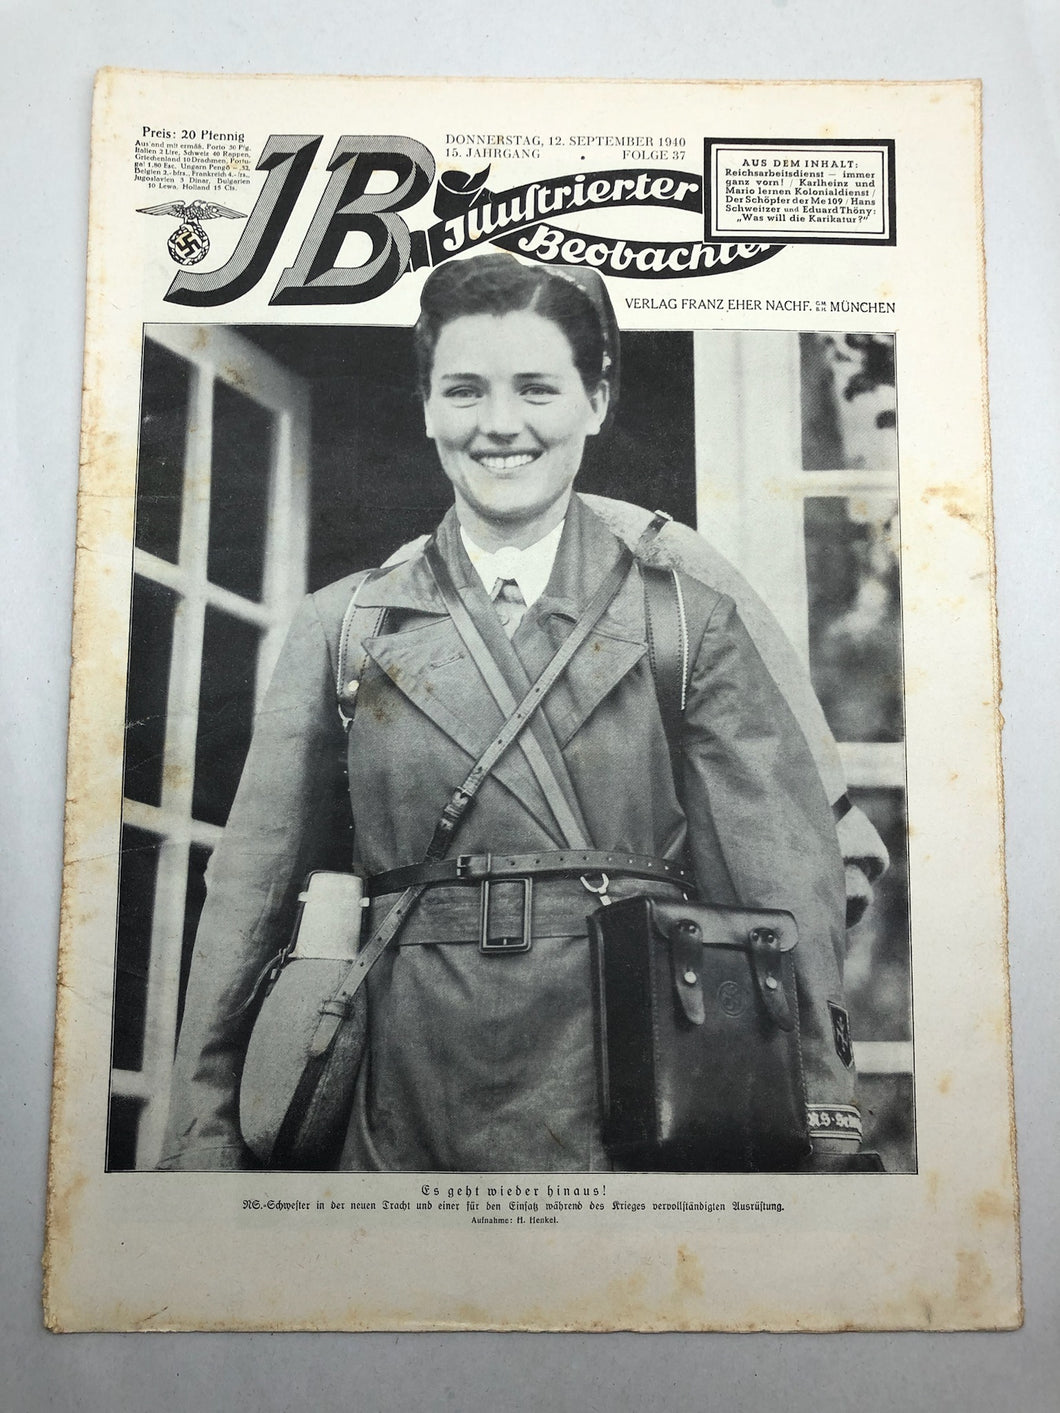 JB Juustrierter Beobachter NSDAP Magazine Original WW2 German - 12 September 1940